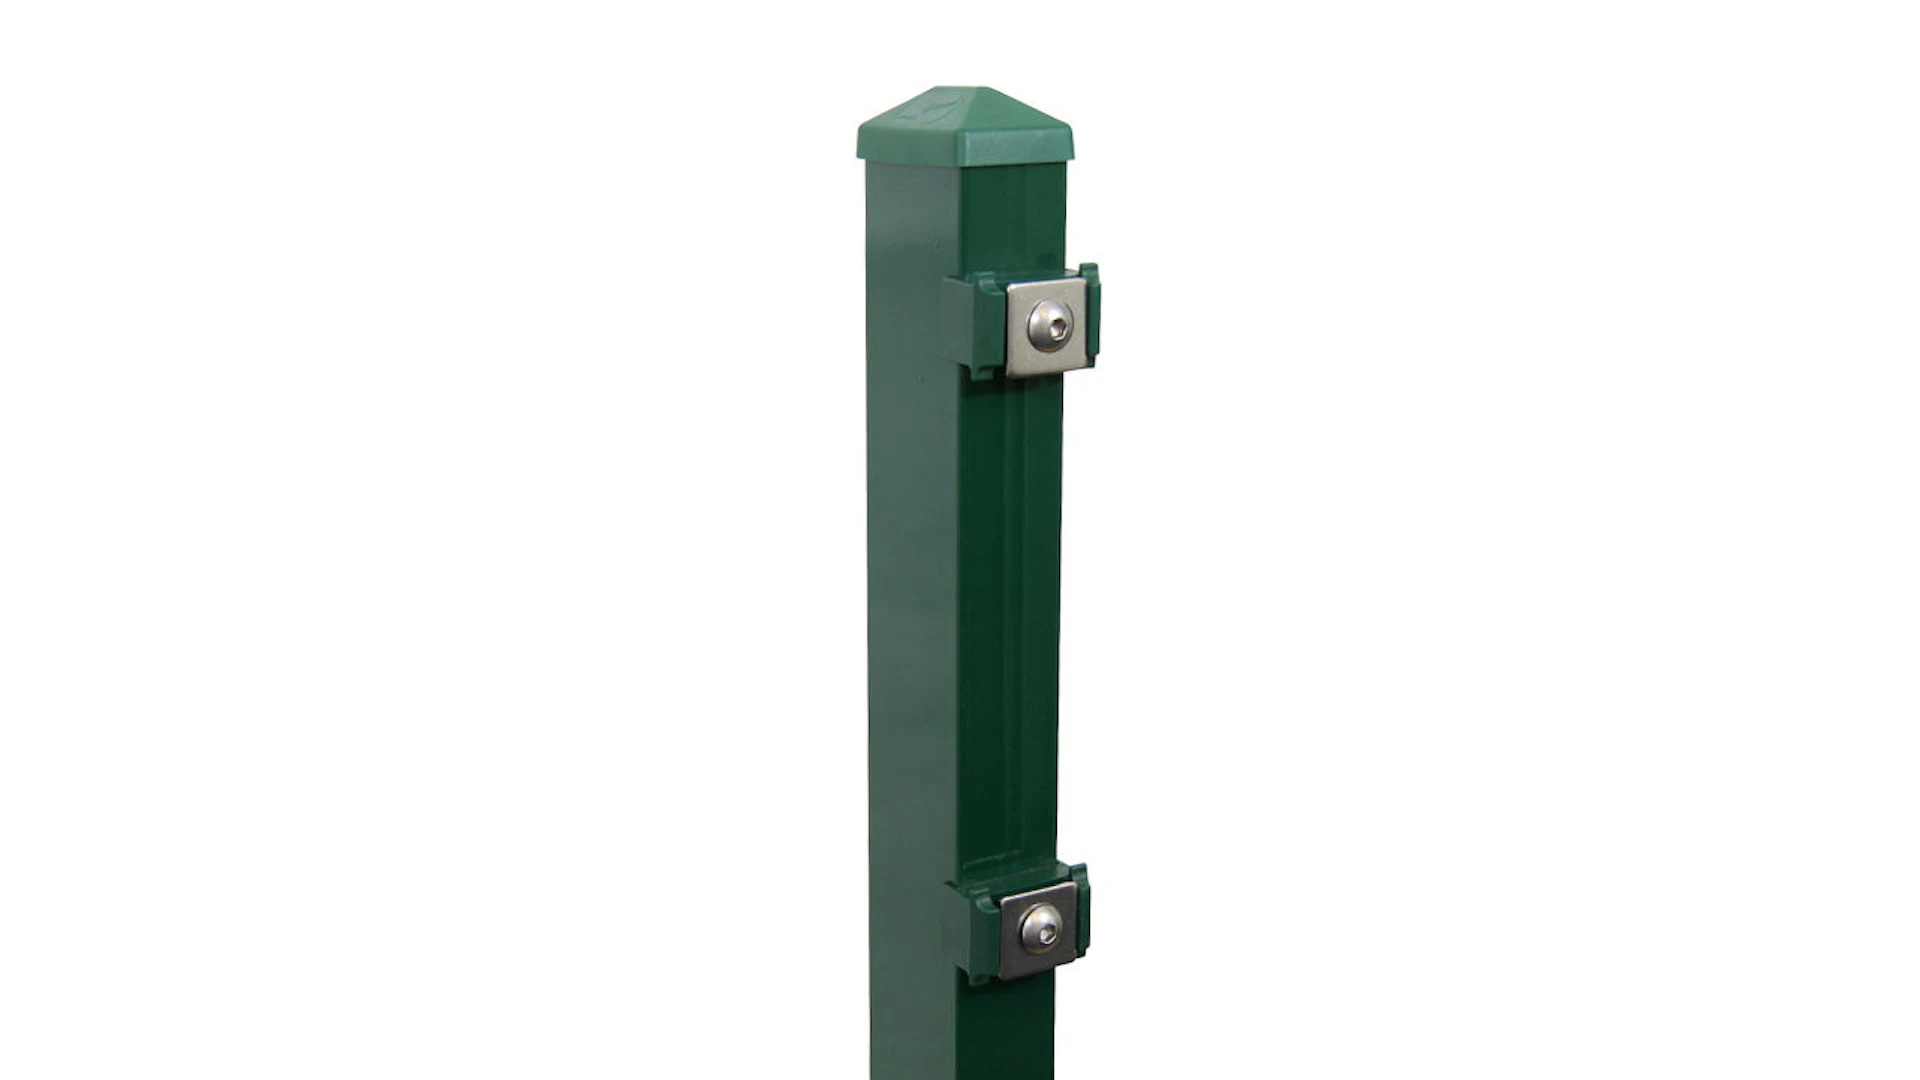 Poteau de clôture de type P vert mousse pour clôture à double maille - hauteur de la clôture 1430 mm